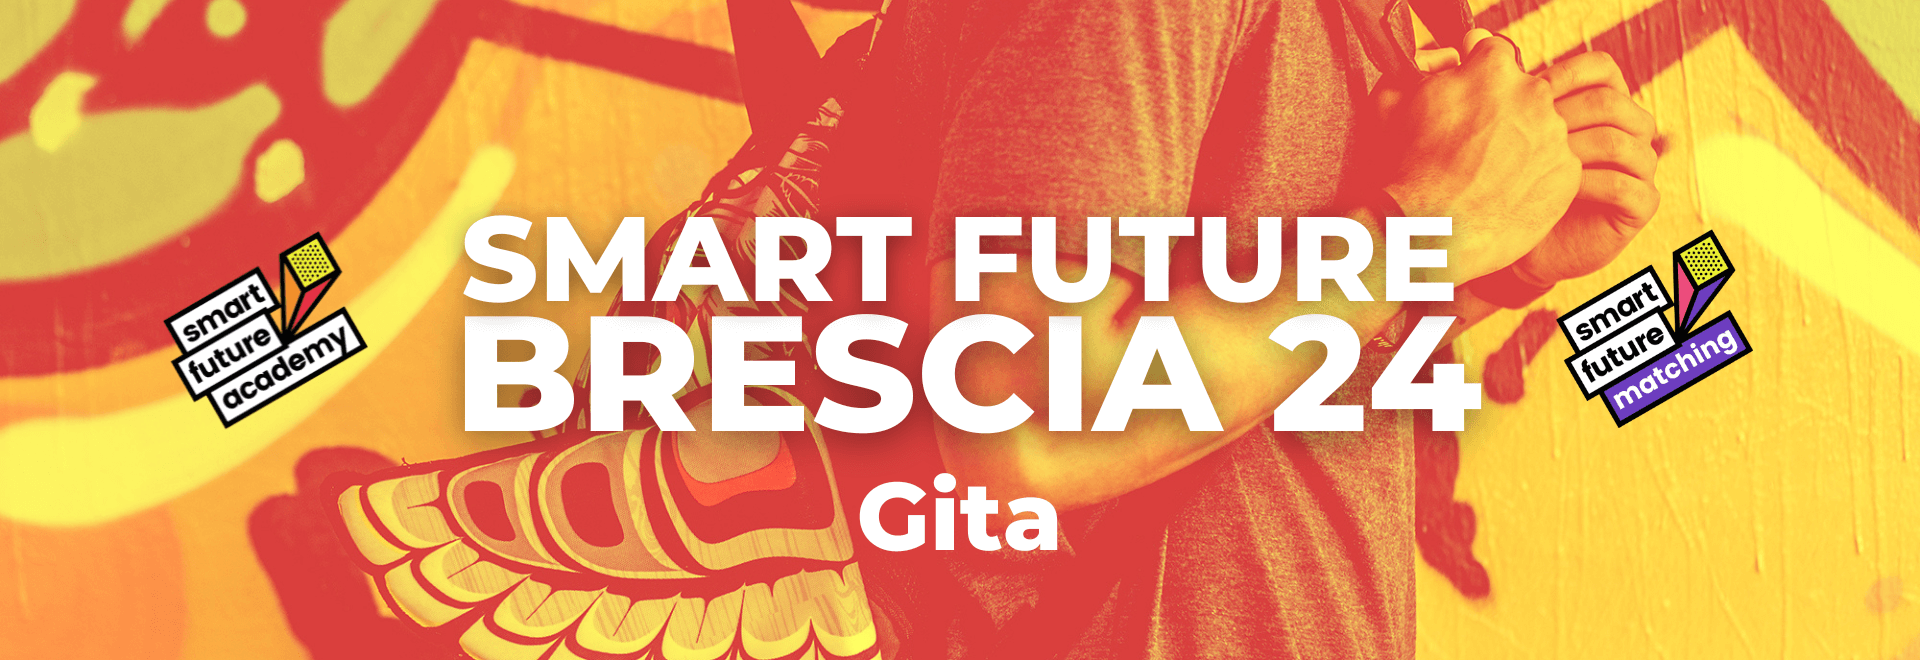 SMART FUTURE <br>BRESCIA 24- Gita<br><br> 3-4-5 ottobre 2024